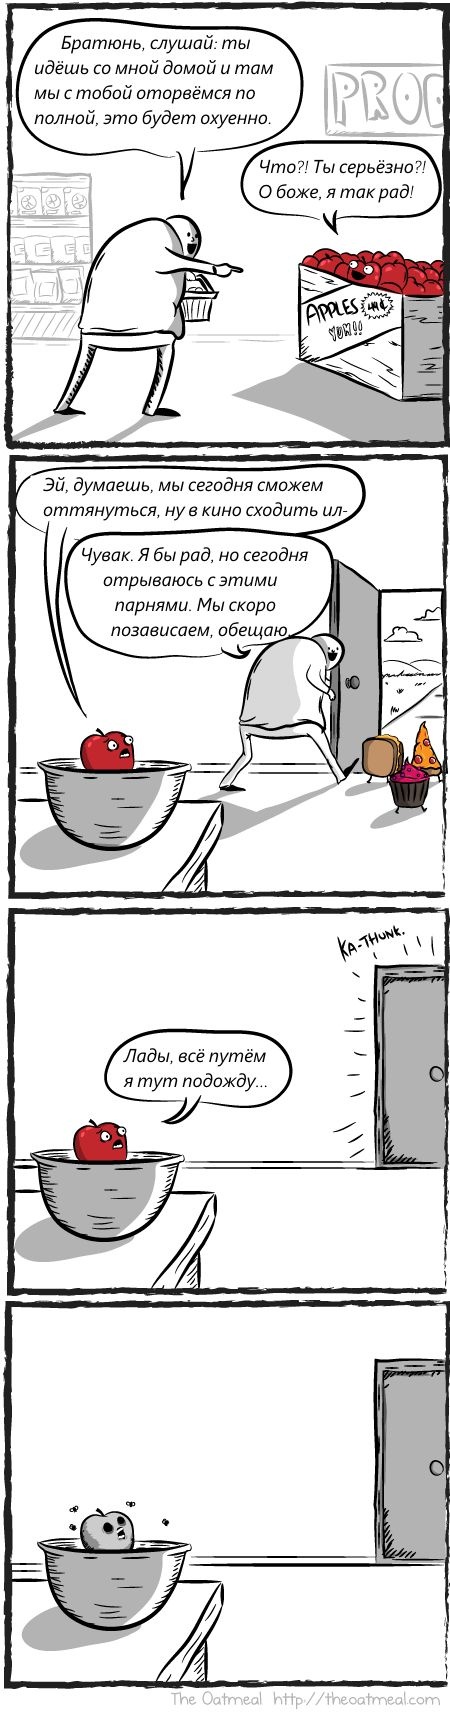 Смешные комиксы (20 картинок) 11.07.2014